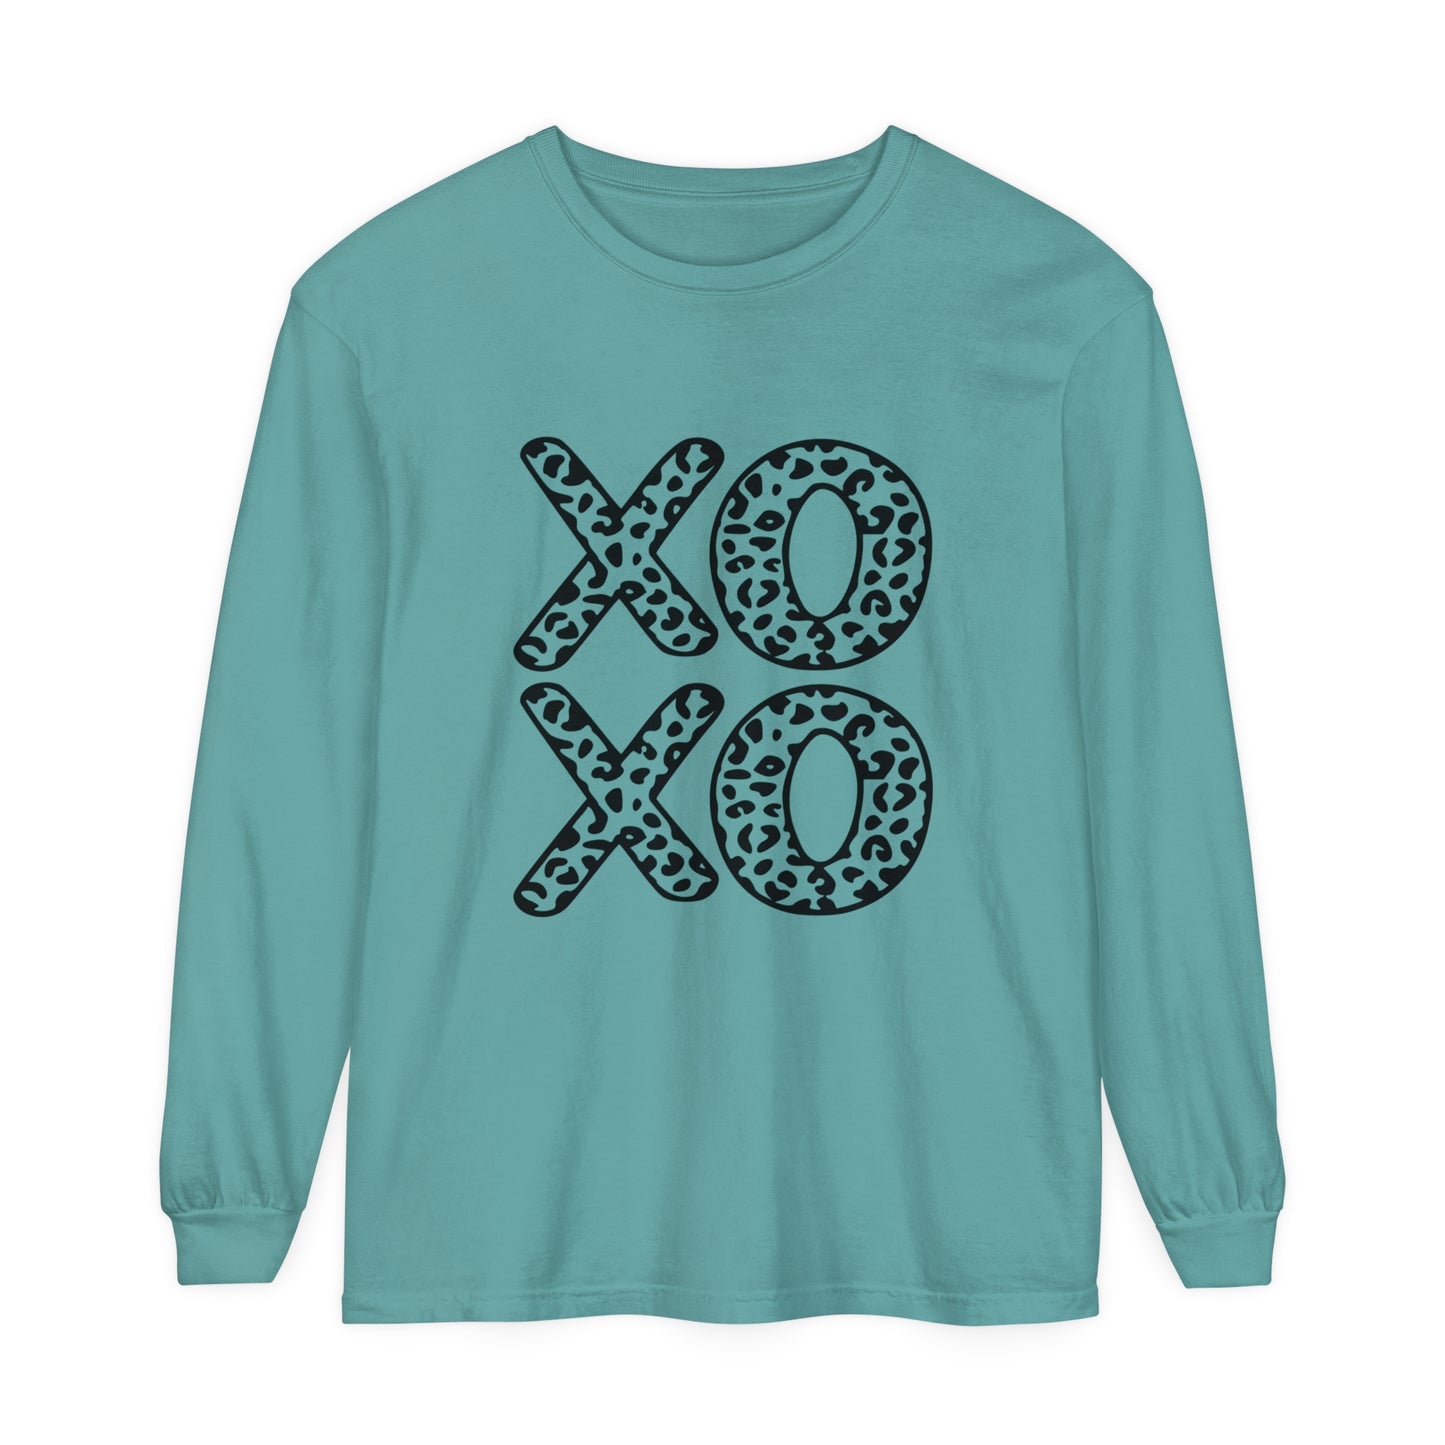 XOXO Women's Loose Long Sleeve T-Shirt